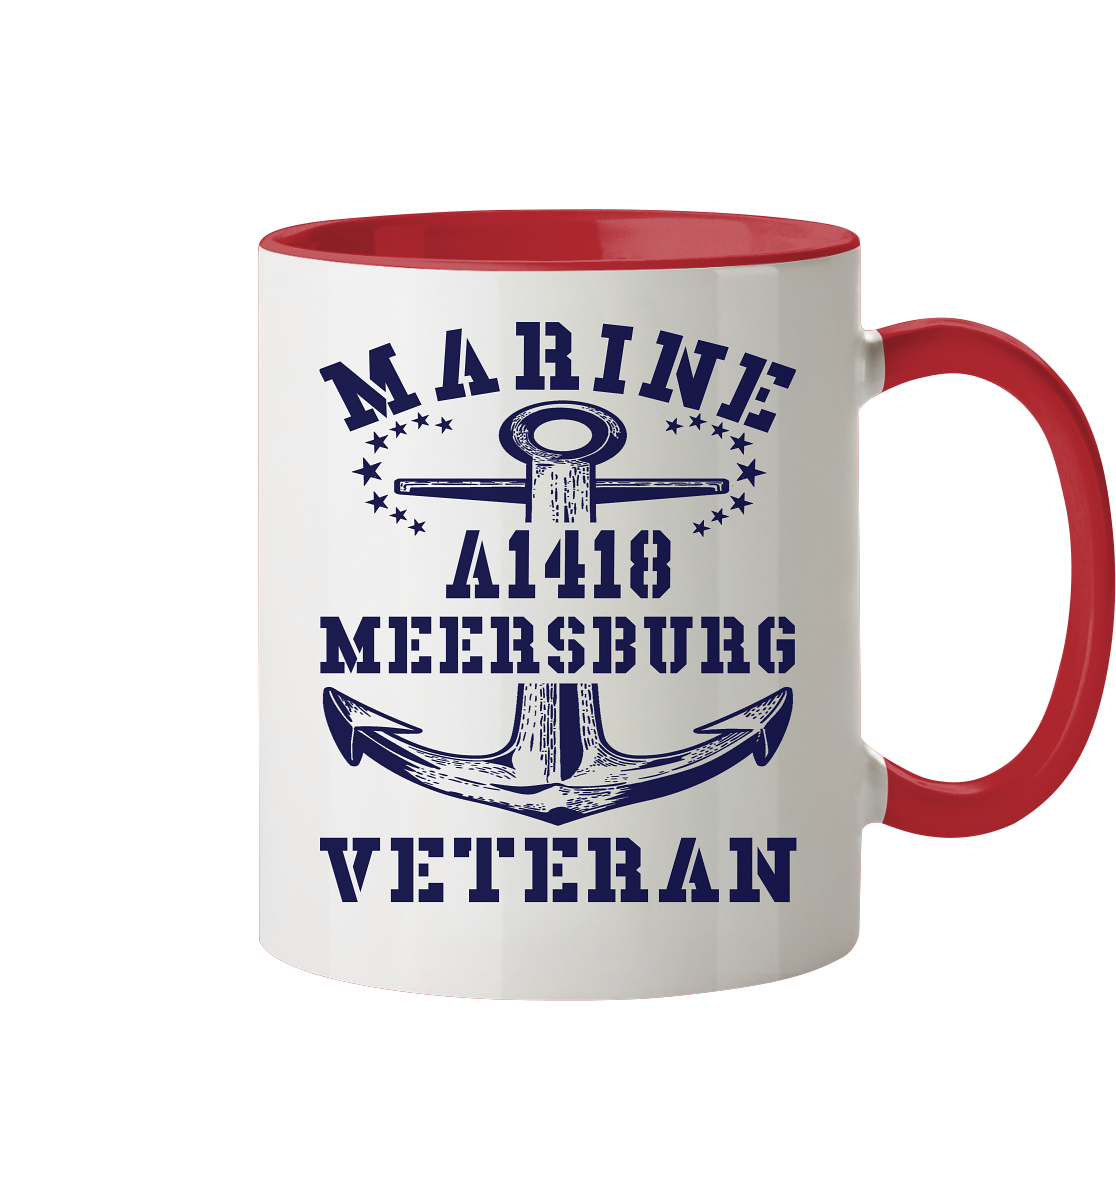 Troßschiff A1418 MEERSBURG Marine Veteran - Tasse zweifarbig